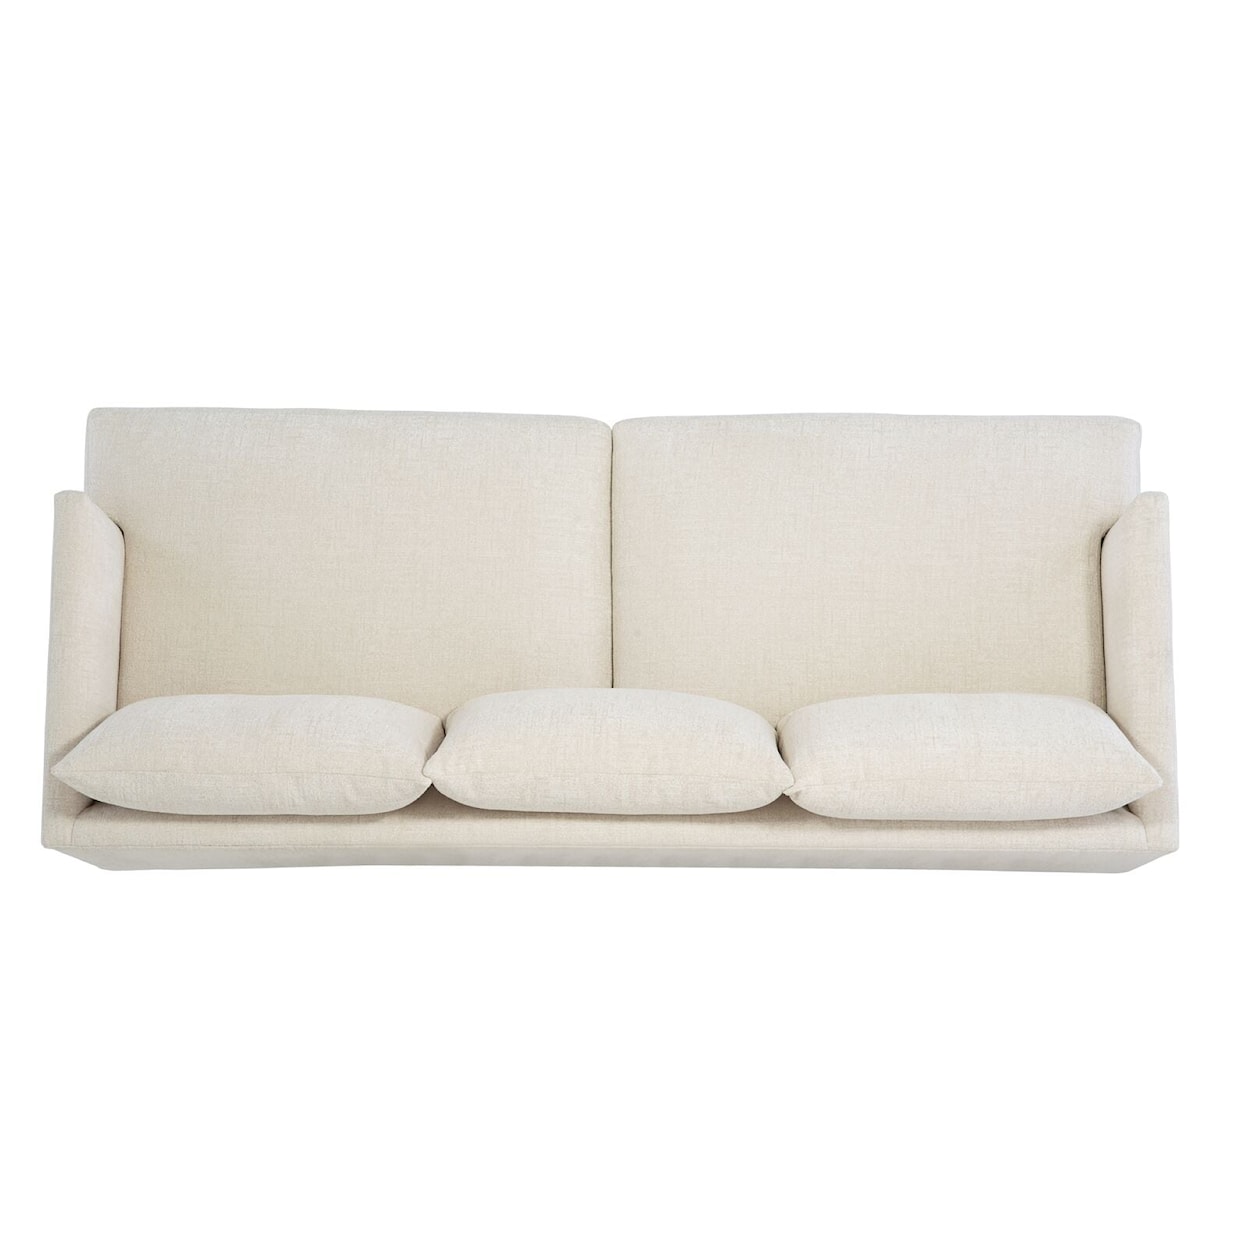 Bernhardt Plush Colette Fabric Sofa